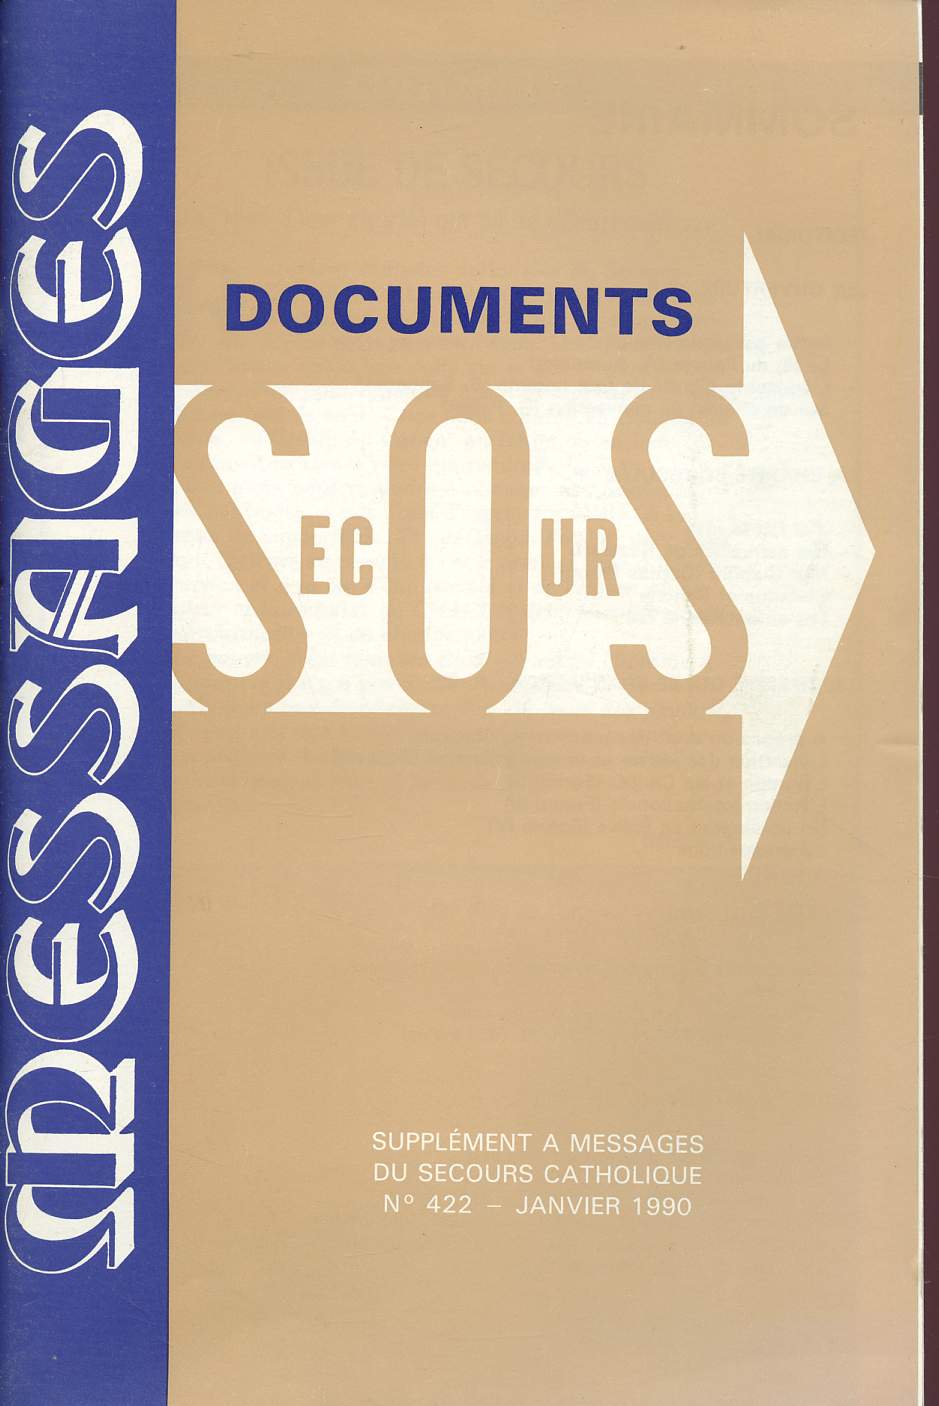 SUPPLEMENT A MESSAGE DU SECOURS CATHOLIQUE N422 - JANVIER 1990